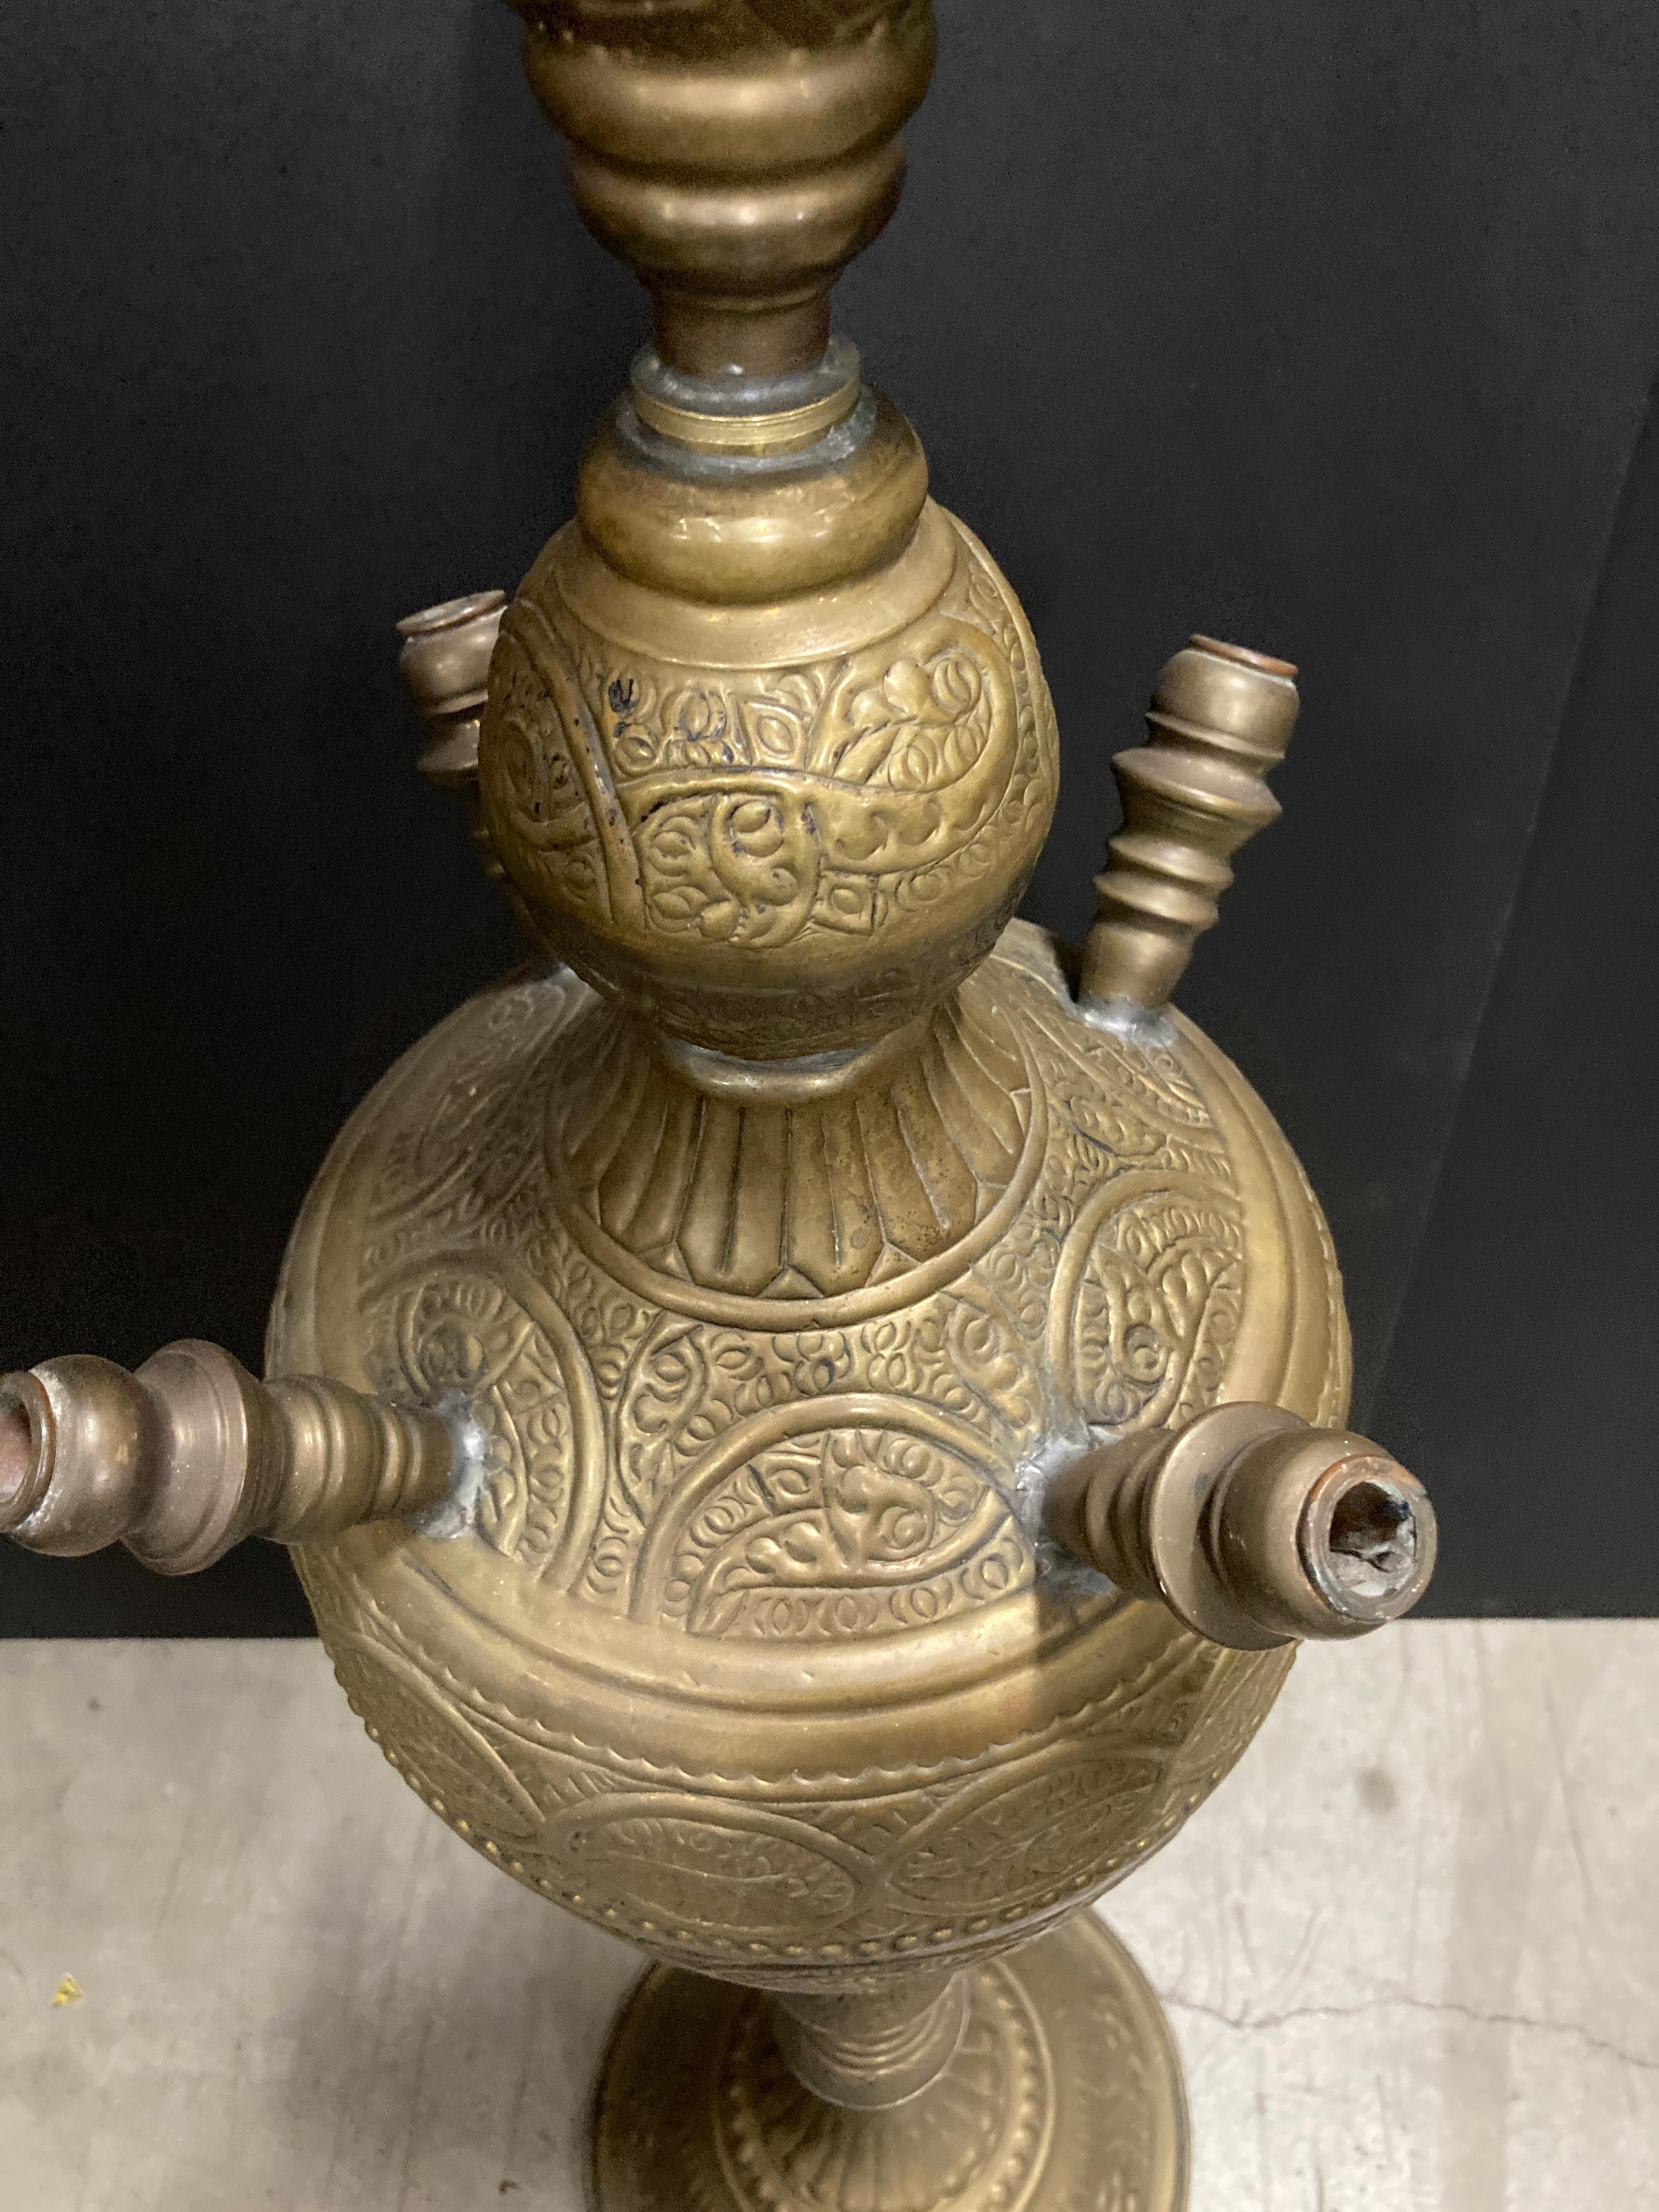 Etched Huge Massive Middle Eastern Arabian Brass Hookah Pipe 6 feet Tall